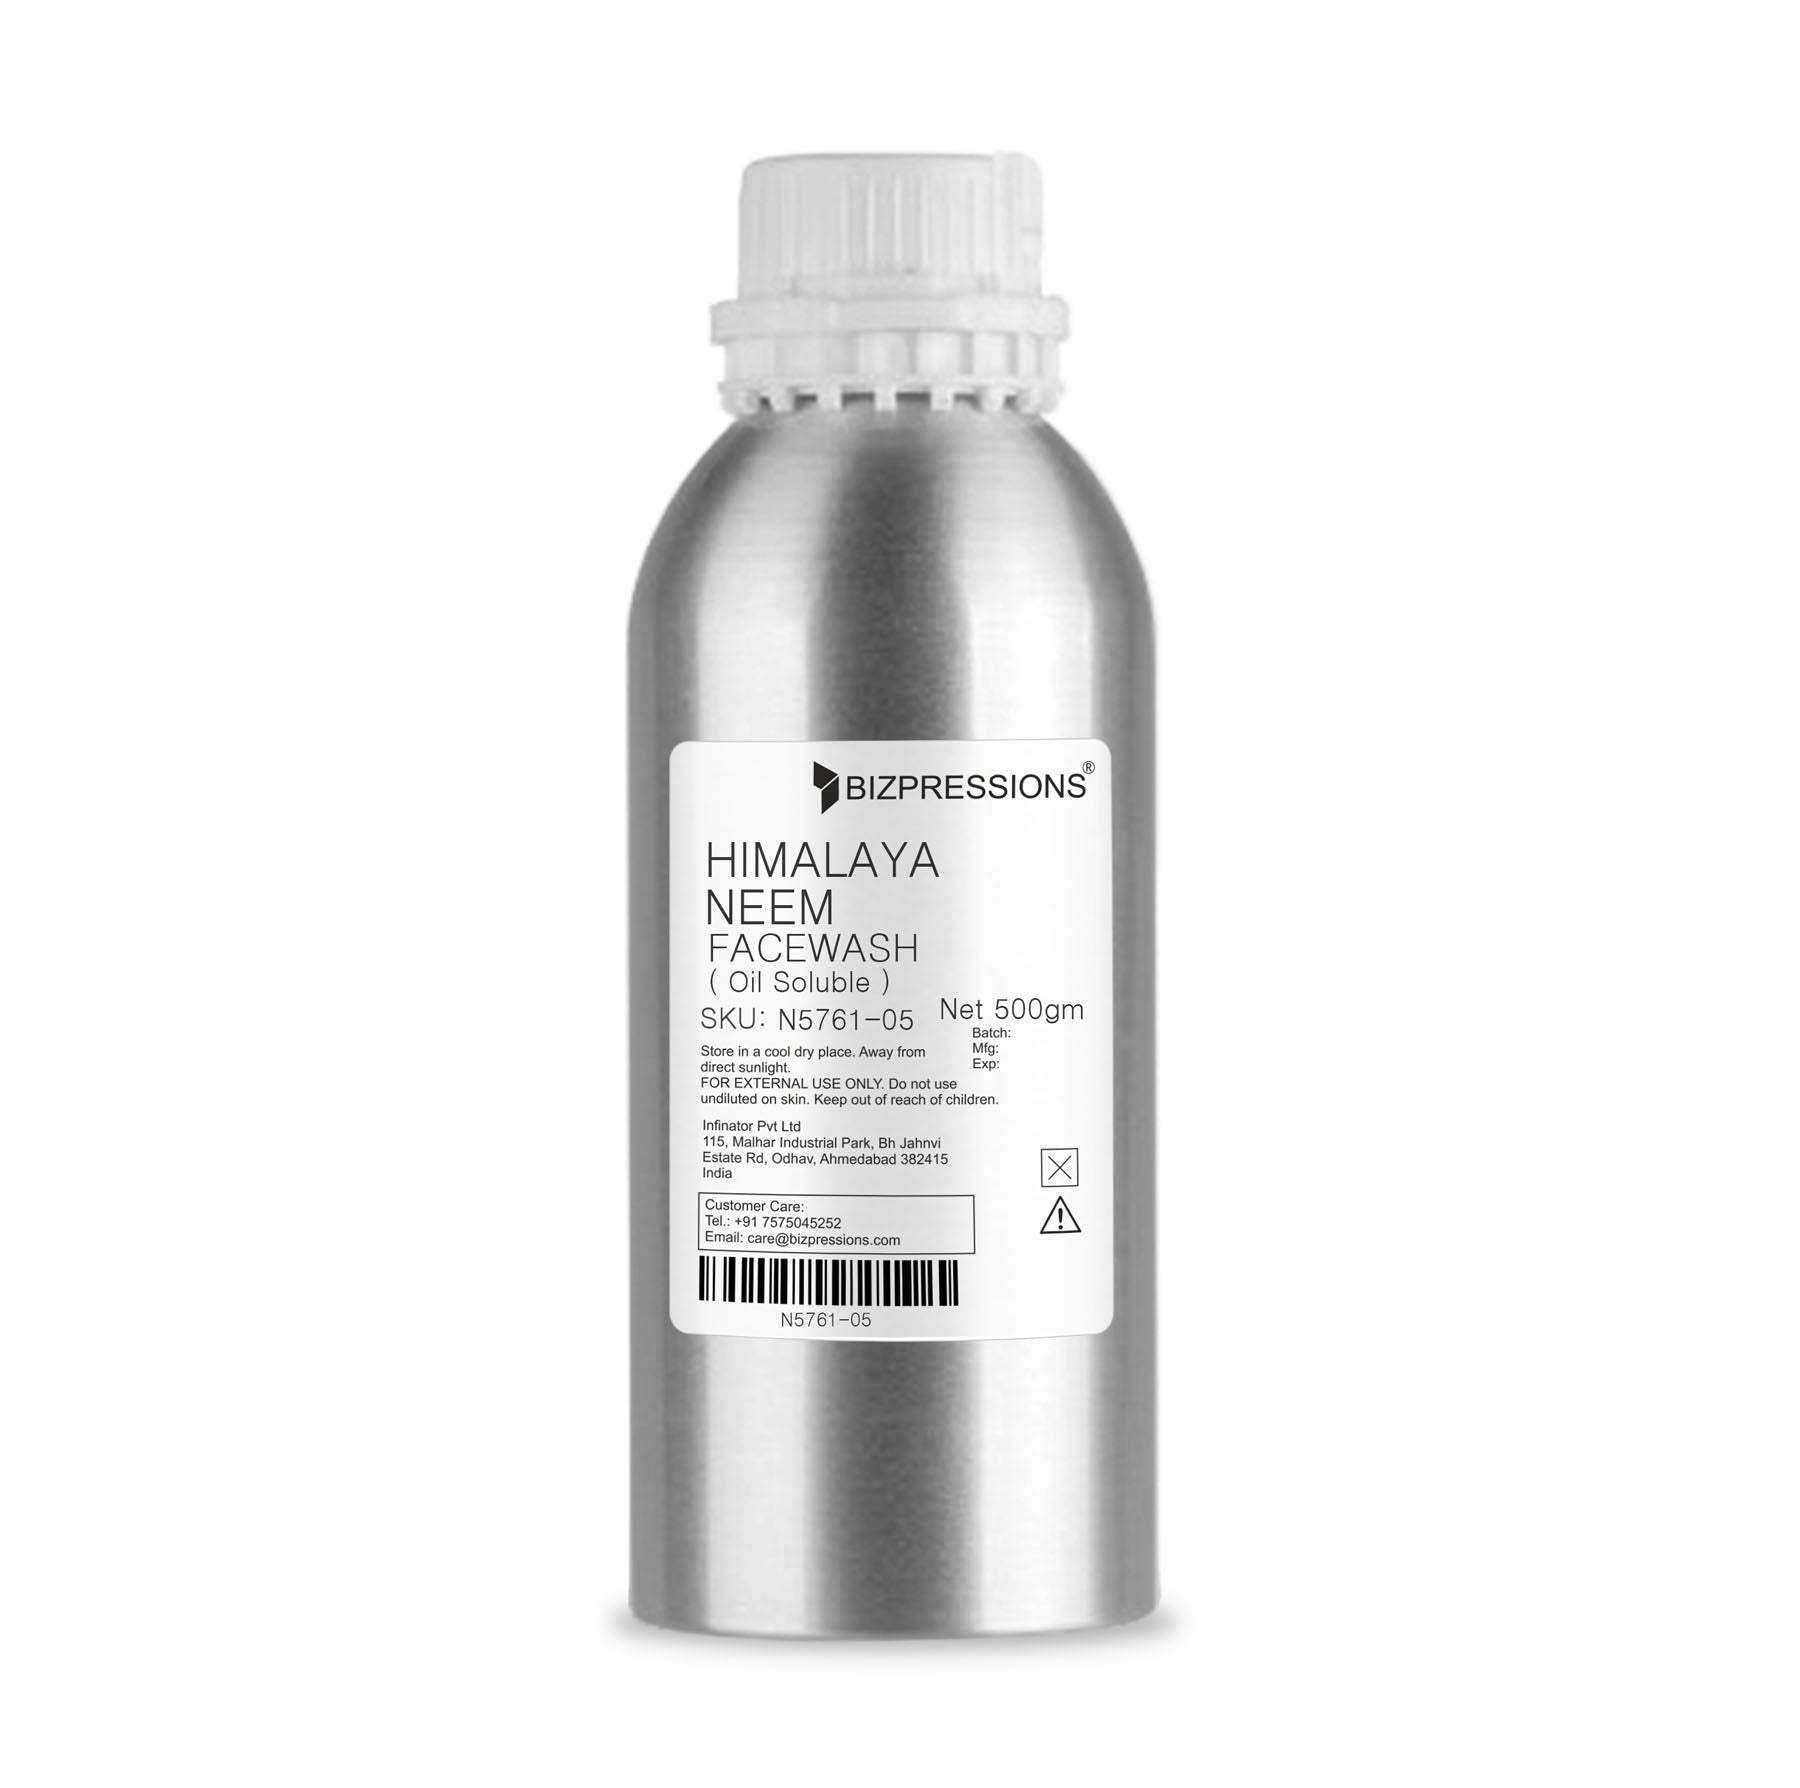 HIMALAYA NEEM FACEWASH - Fragrance ( Oil Soluble ) - 500 gm